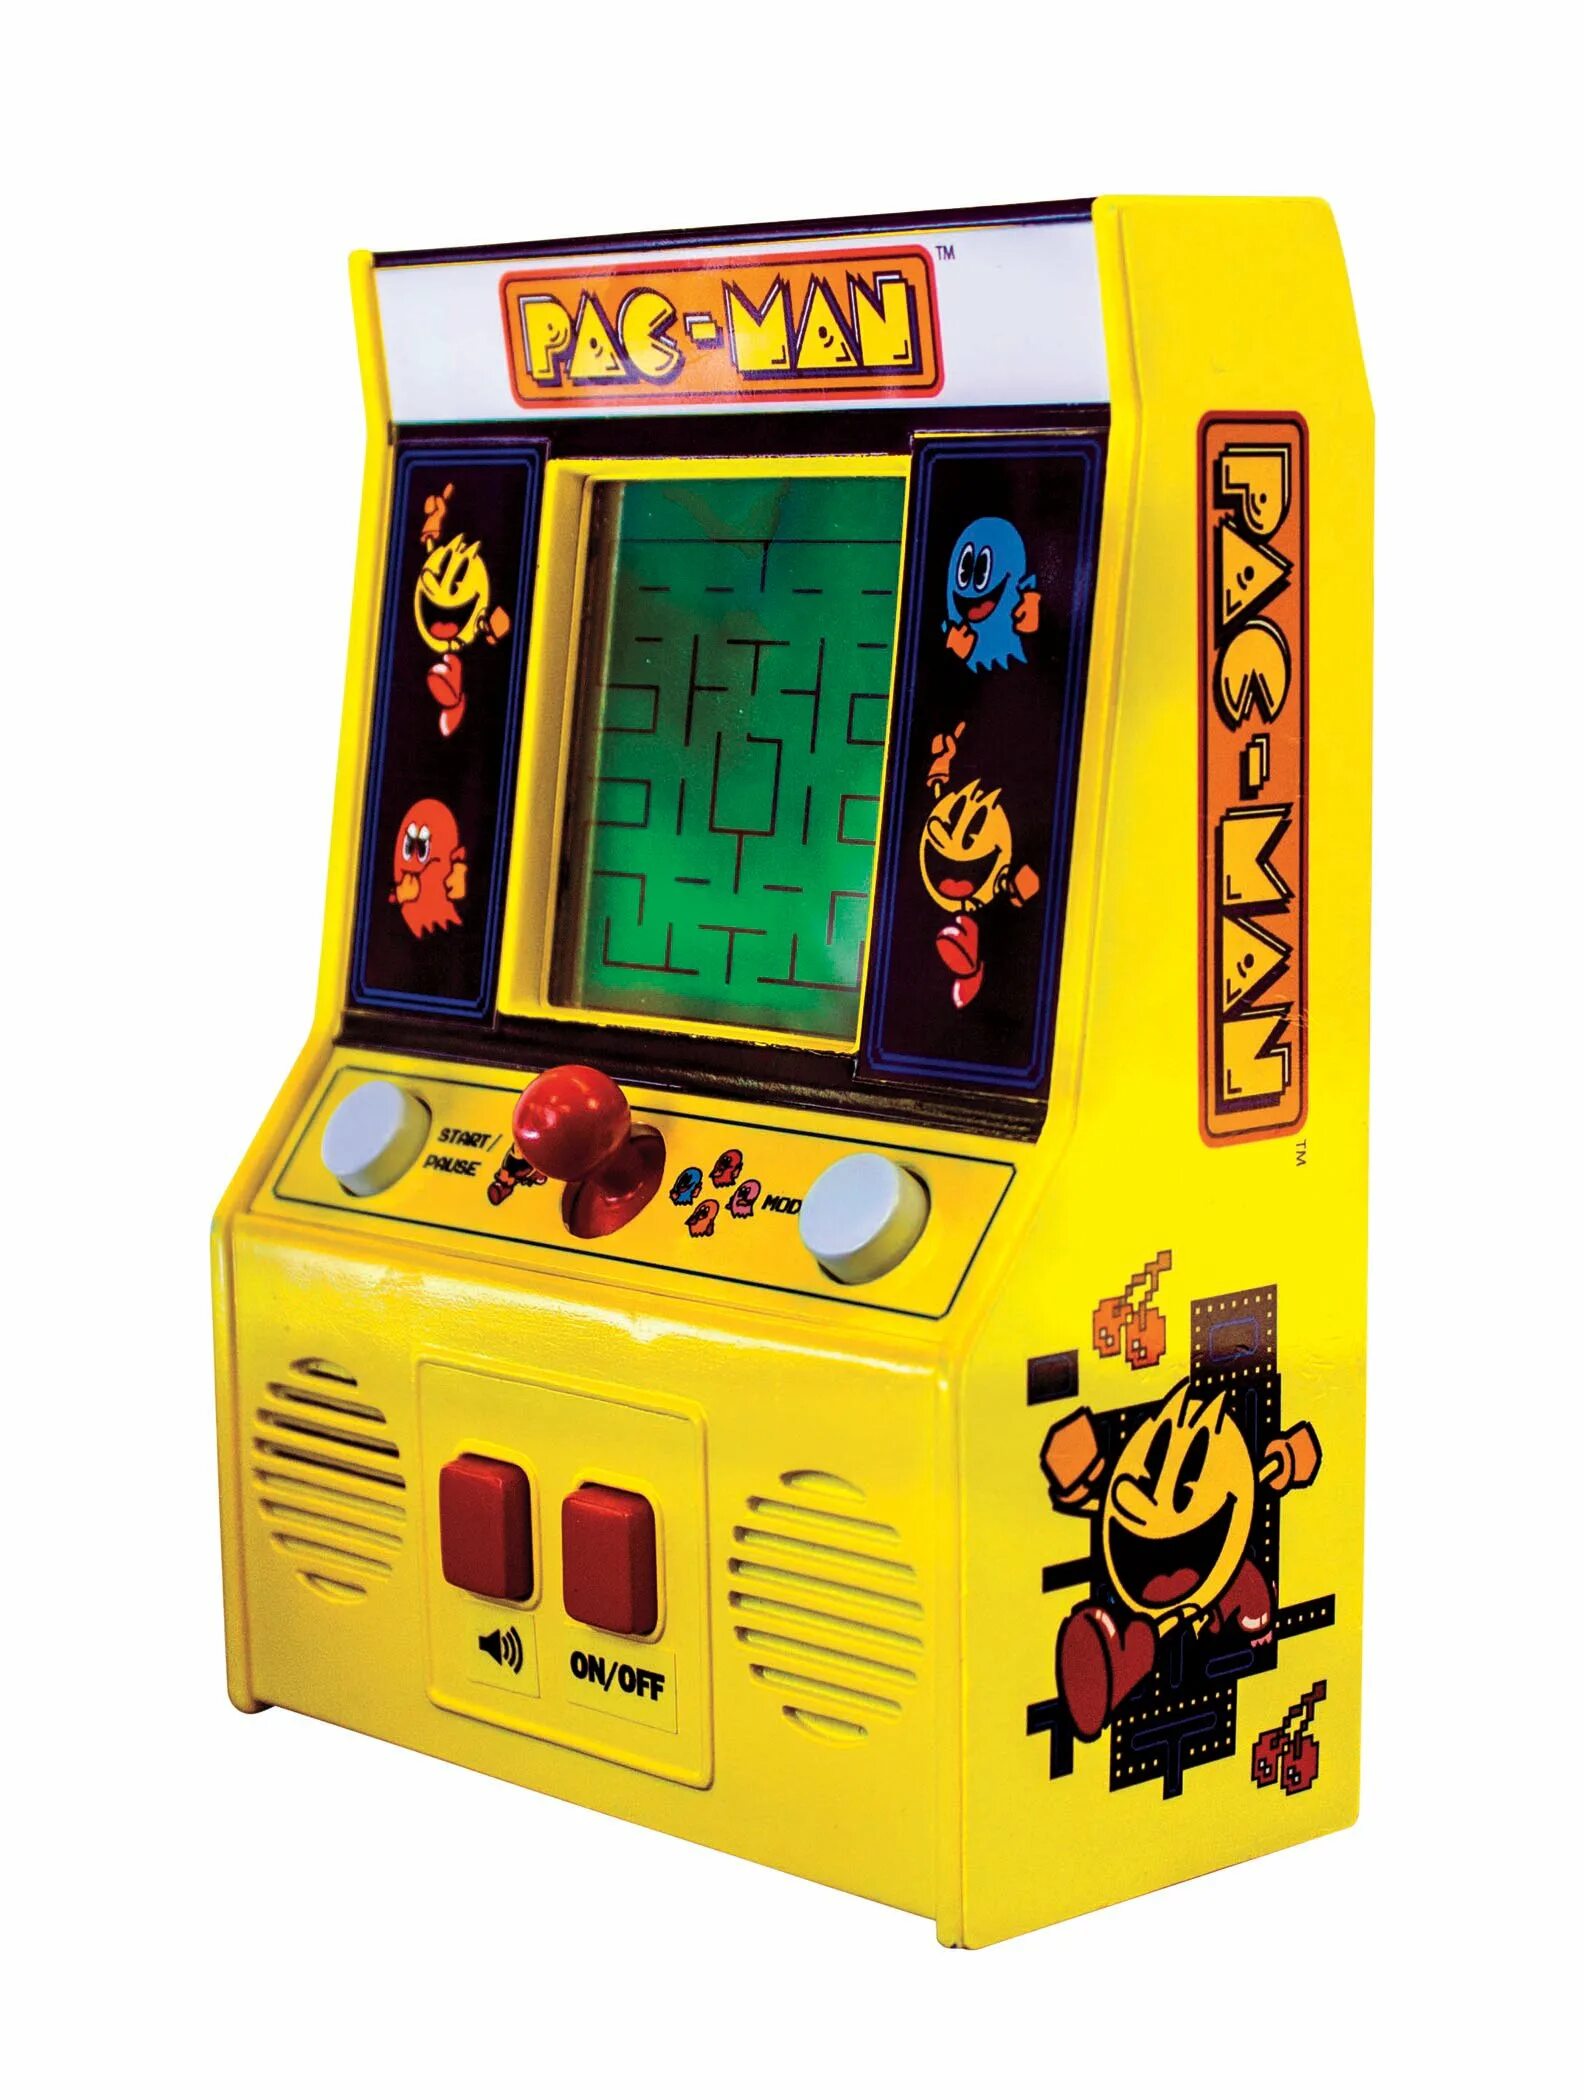 Купить игровой автомат с игрушками. Мини аркадный автомат Пакмен. Игровой автомат Retro Arcade. Pac-man Arcade игровой автомат. Мини аркадный автомат Retro Arcade.